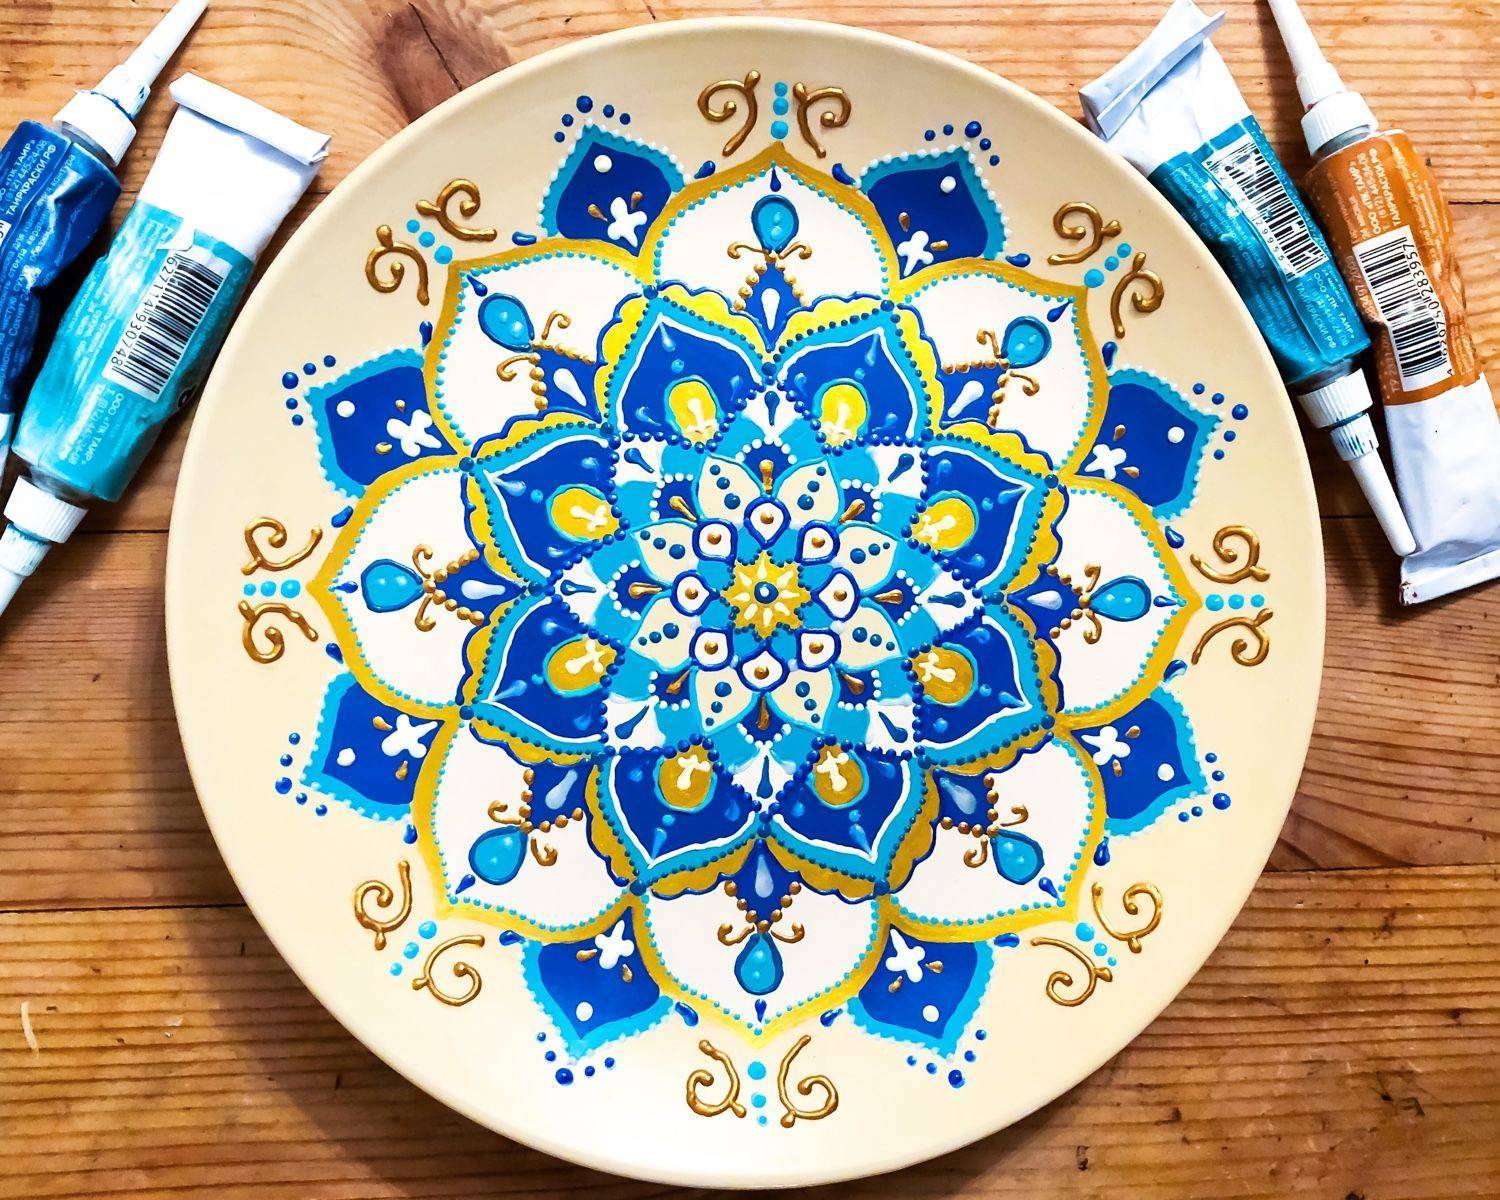 Точечная роспись красками в декоре тарелок, посуды и керамики